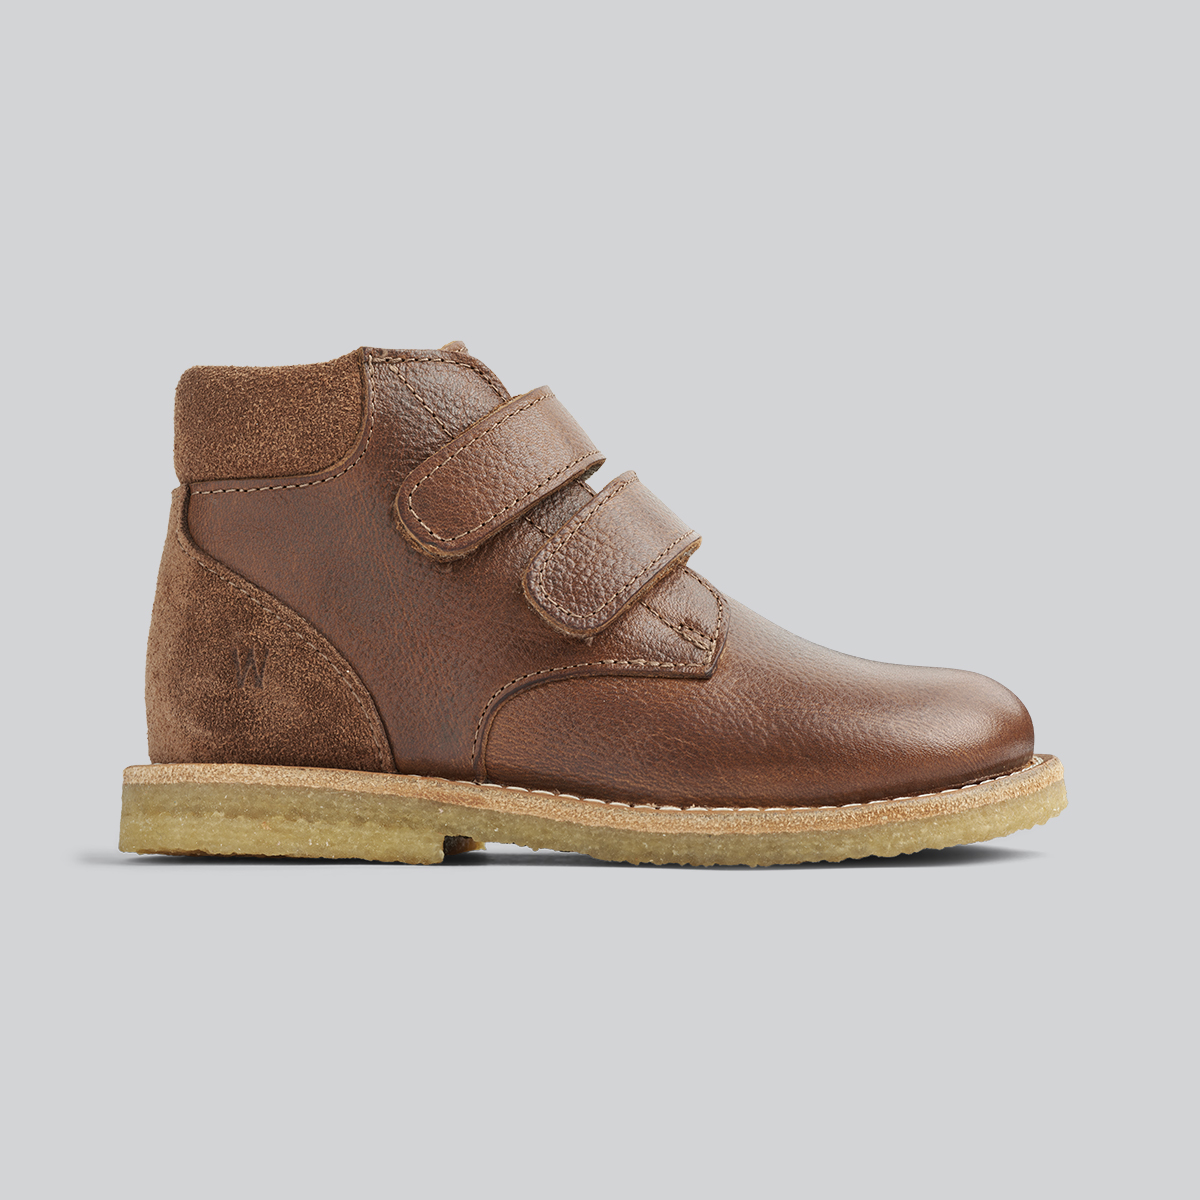 Produktbillede sideskud af brune Wheat sko